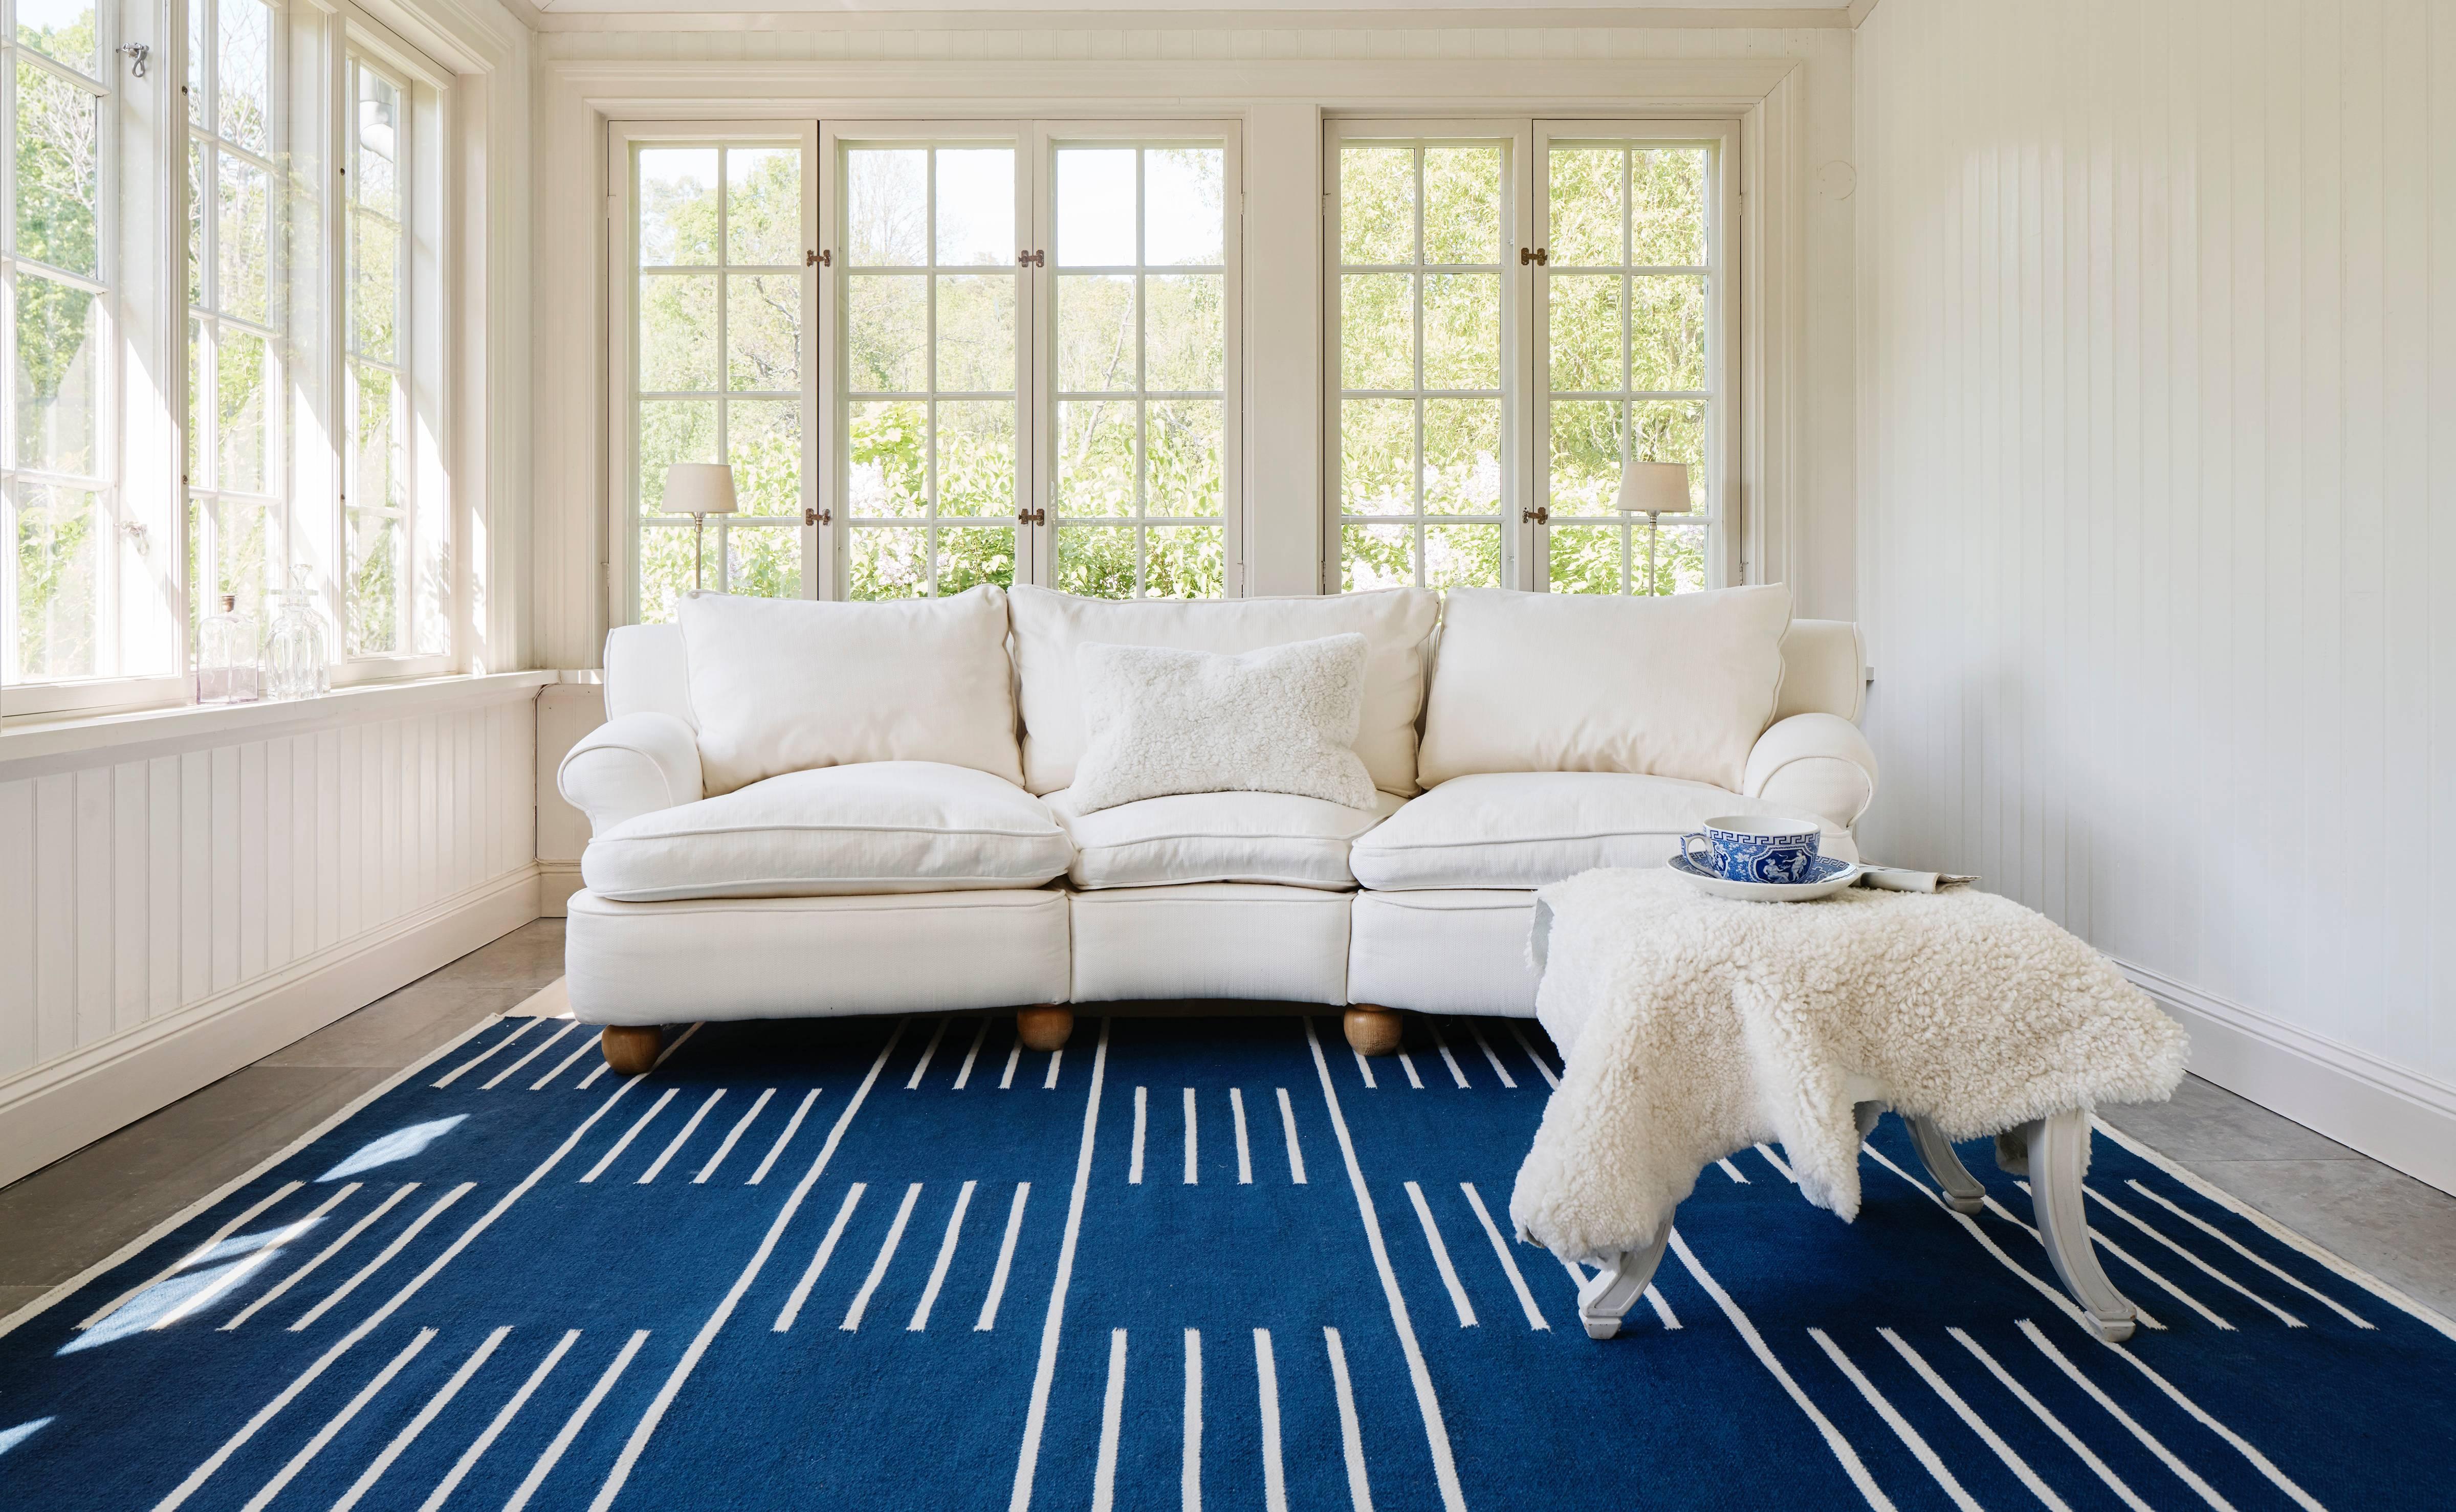 Classic Blue/Cream ist ein moderner Dhurrie/Kilim-Teppich im skandinavischen Design. Er ist in verschiedenen Größen erhältlich - siehe Anpassungsmöglichkeiten unten.

Ein traditionelles Design, inspiriert von klassischen skandinavischen Mustern. Der